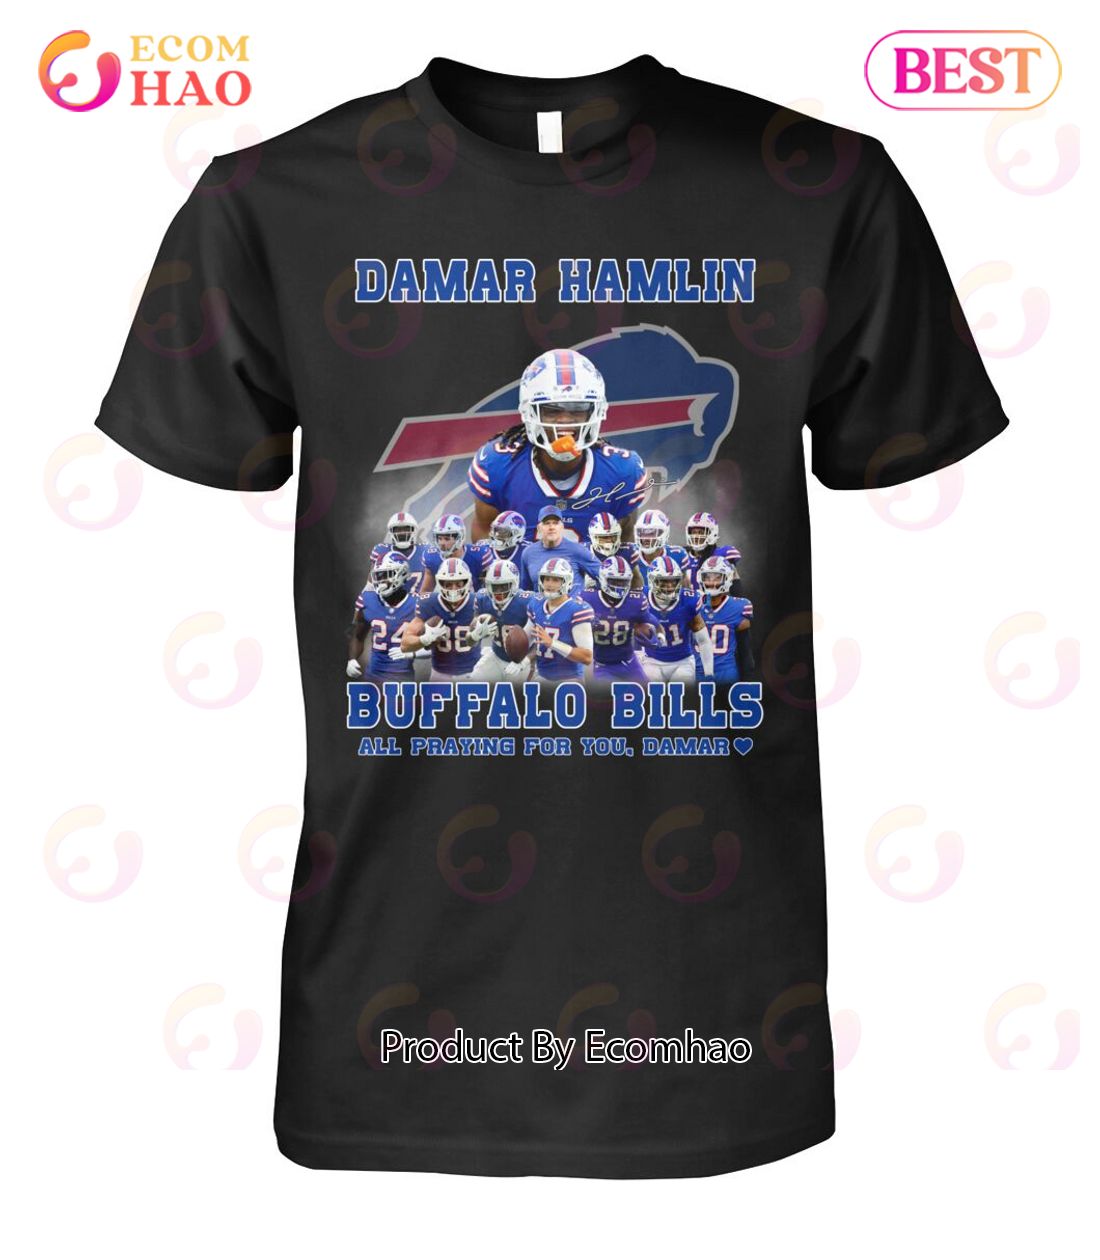 Damar Hamlin Buffalo Bills All Praying For You, Damar T-Shirt